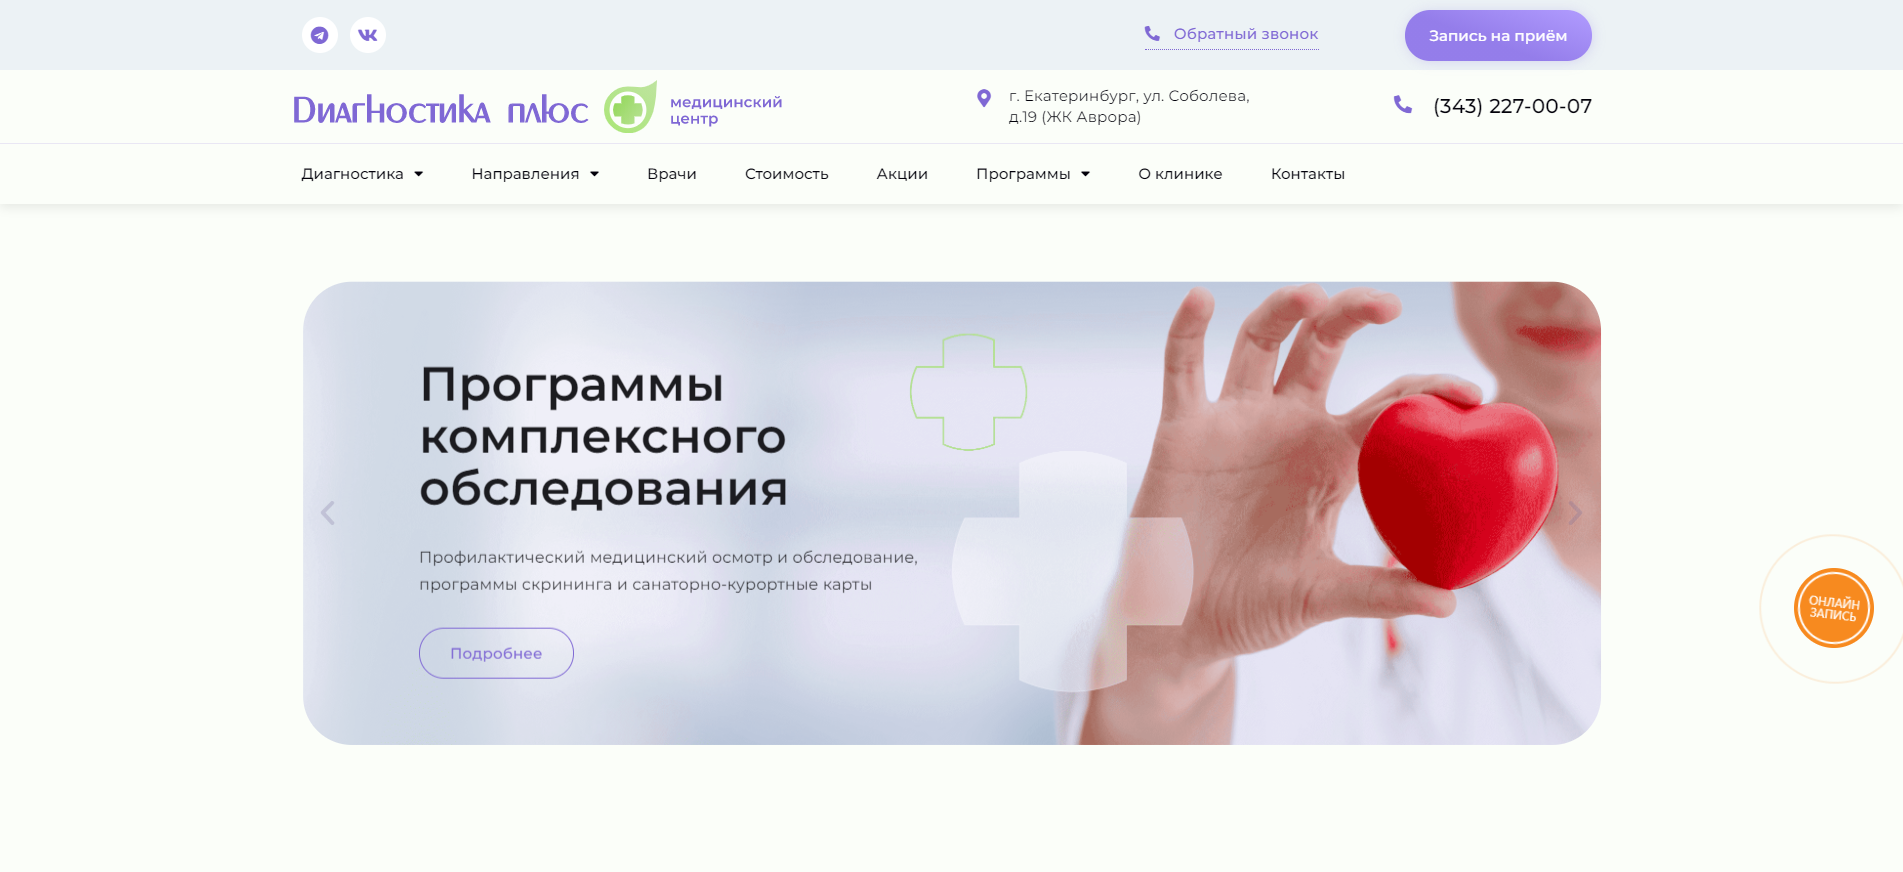 Диагностика Плюс | Медицинский центр в Екатеринбурге